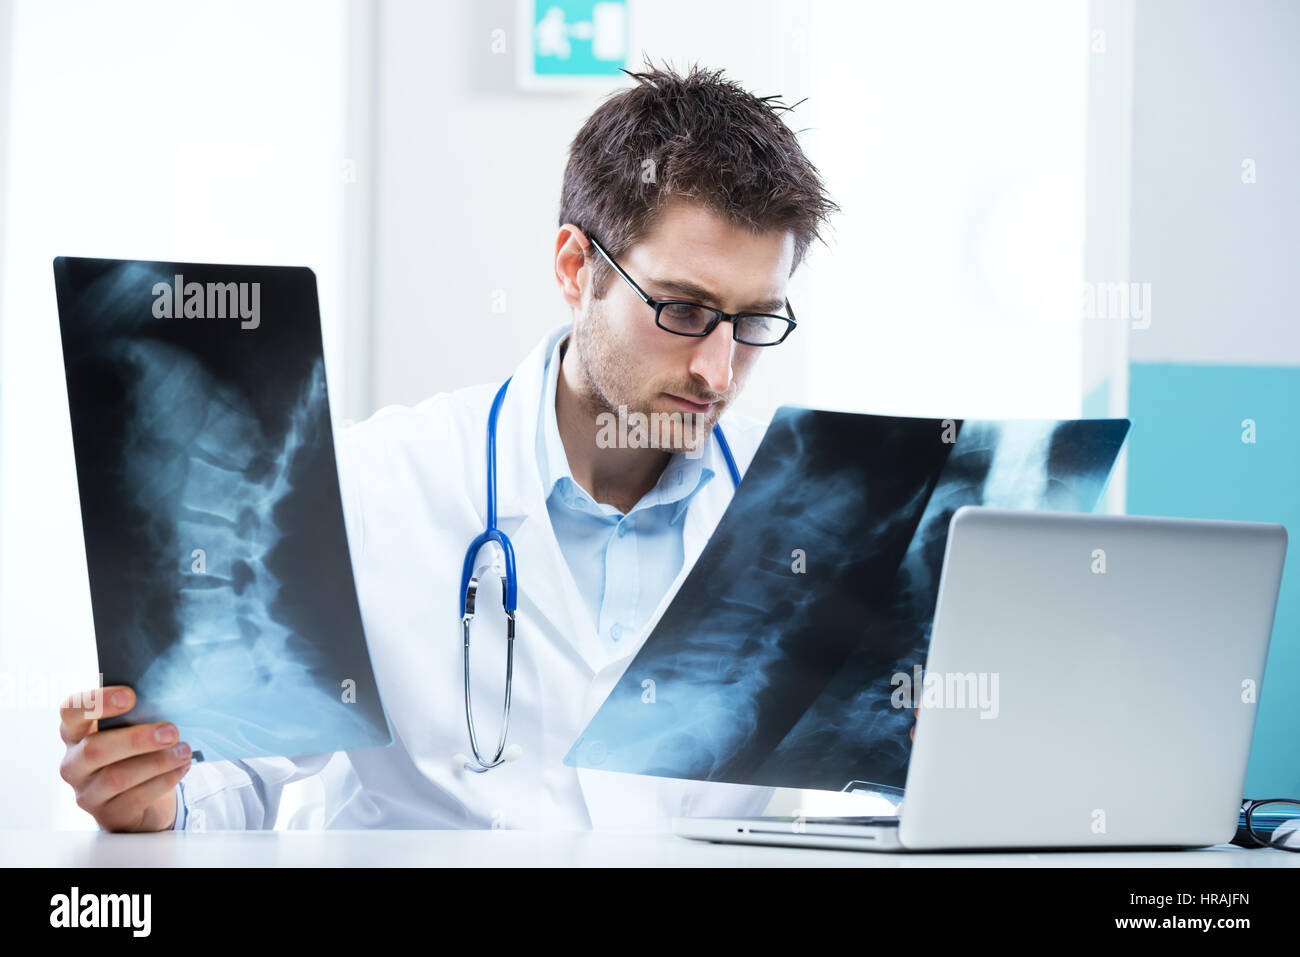 Professional radiologo esamina un'immagine a raggi X della colonna vertebrale umana. Foto Stock